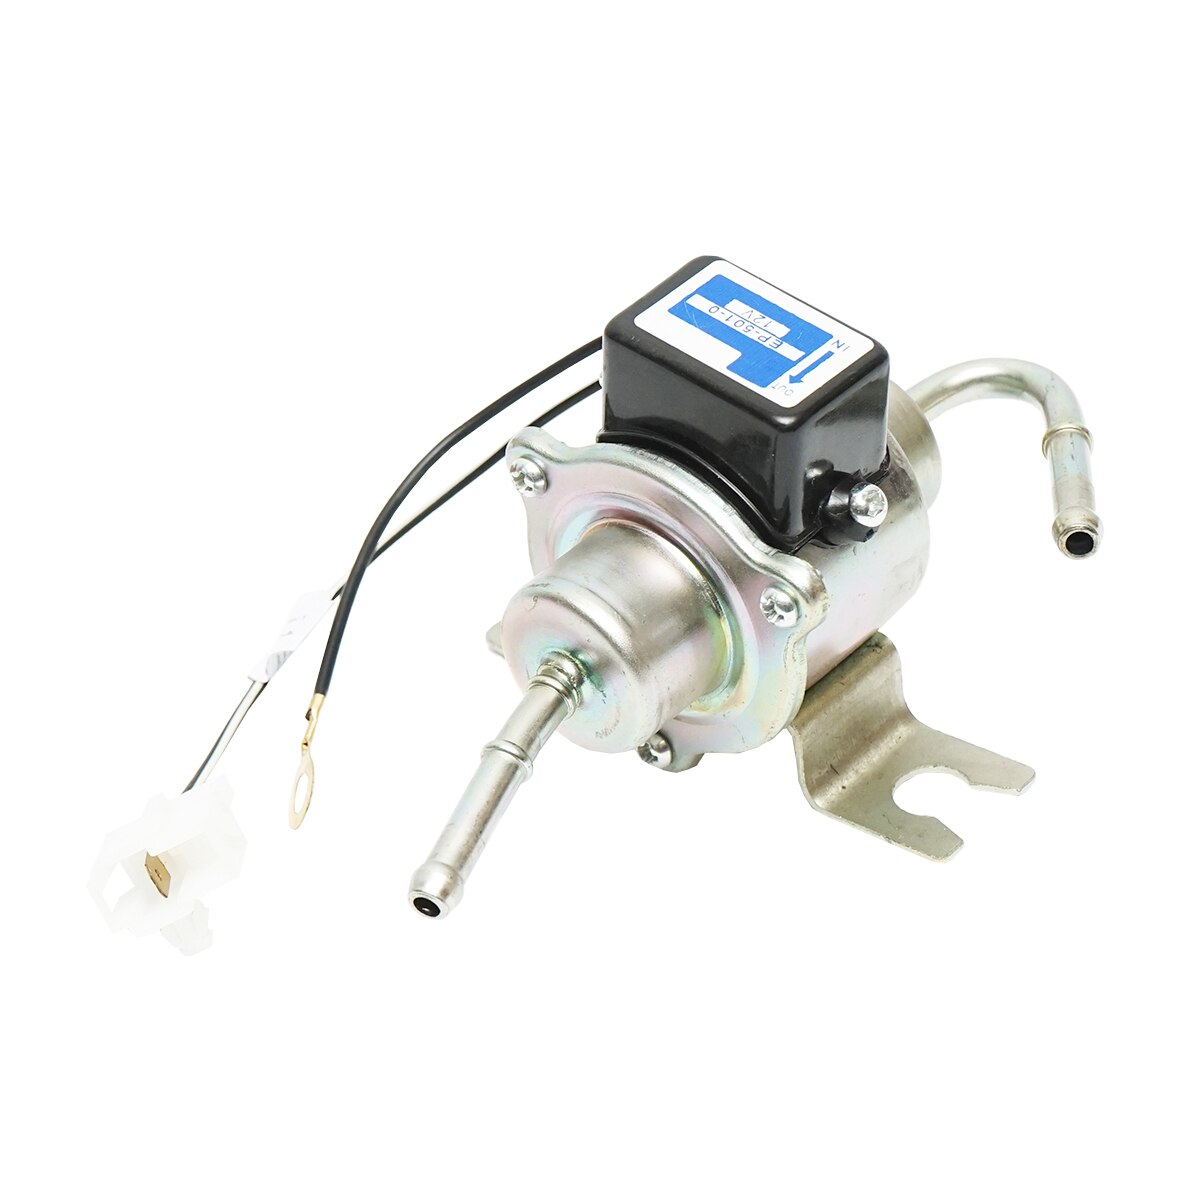 Pompa alimentare electrica universala cu filtru incorporat, 12V, L 145mm, fi  6mm pentru motorina/benzina YK-3106, EP-501-0 